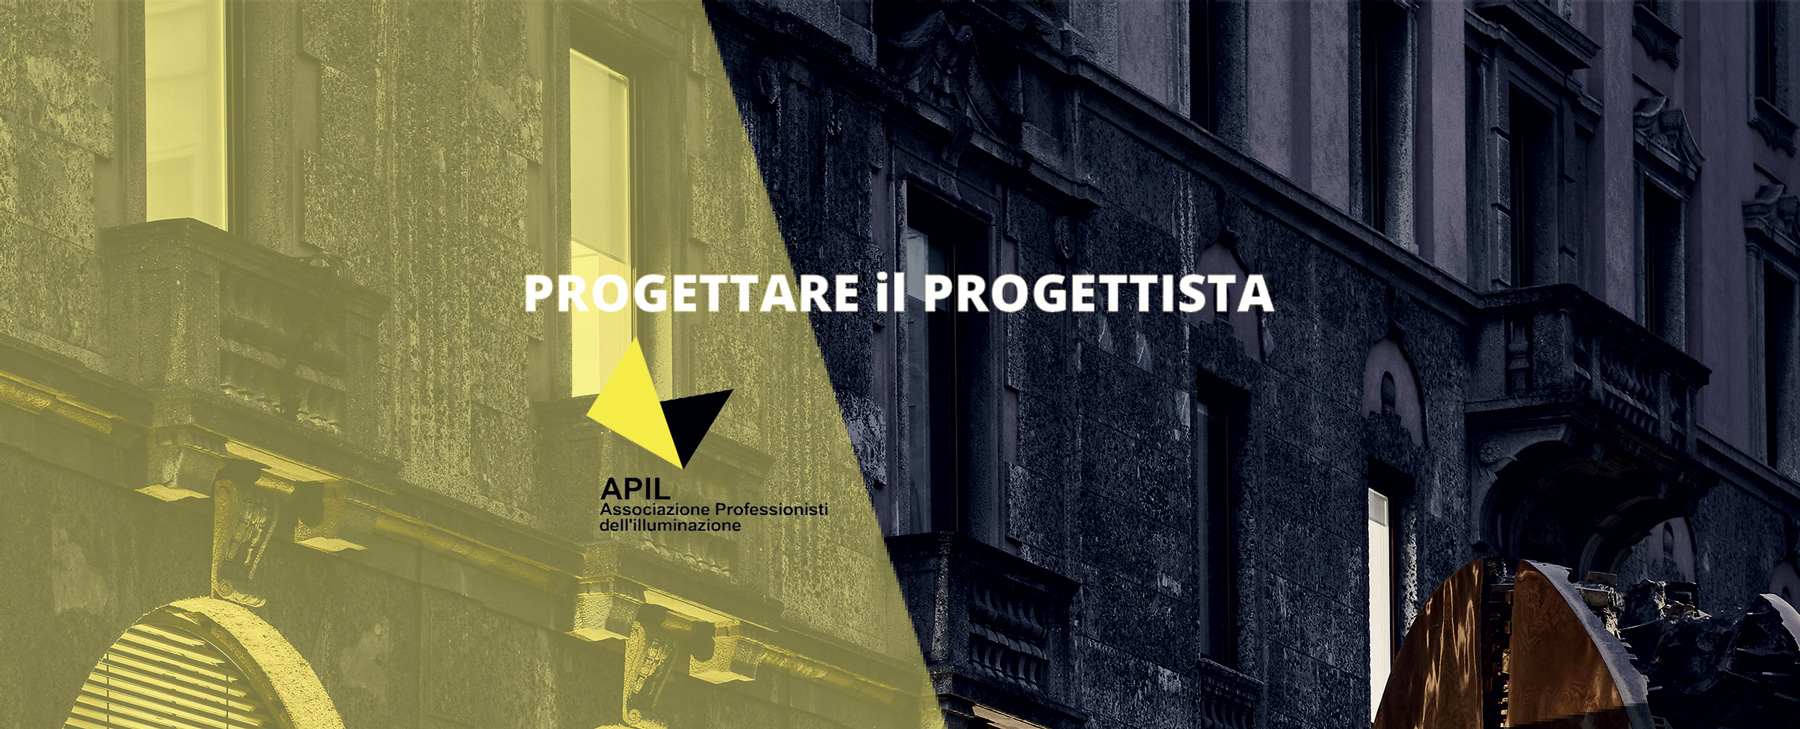 Al via la nona edizione della conferenza Progettare il Progettista organizzata da APIL